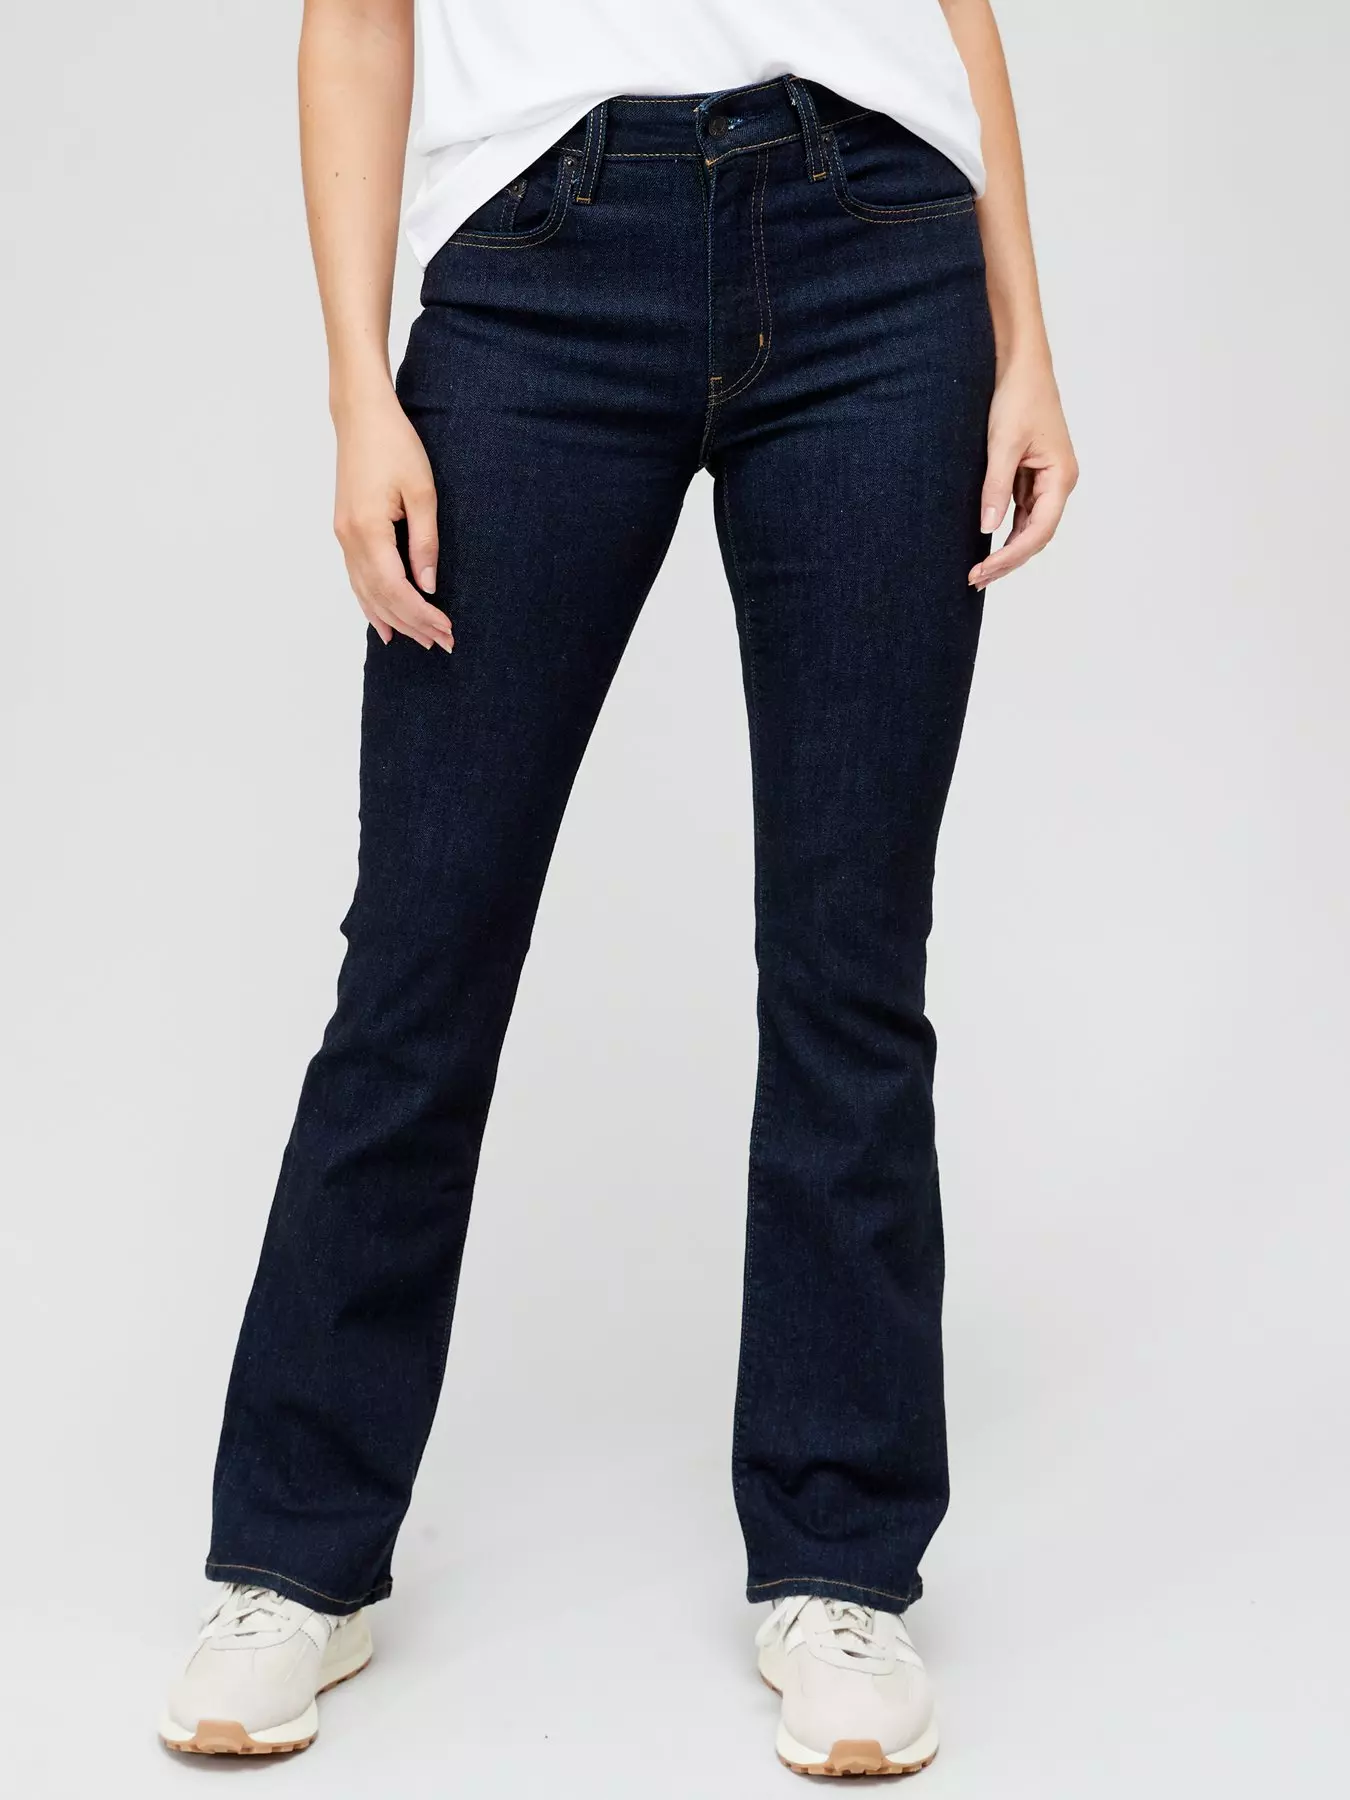 30, Jeans, Women